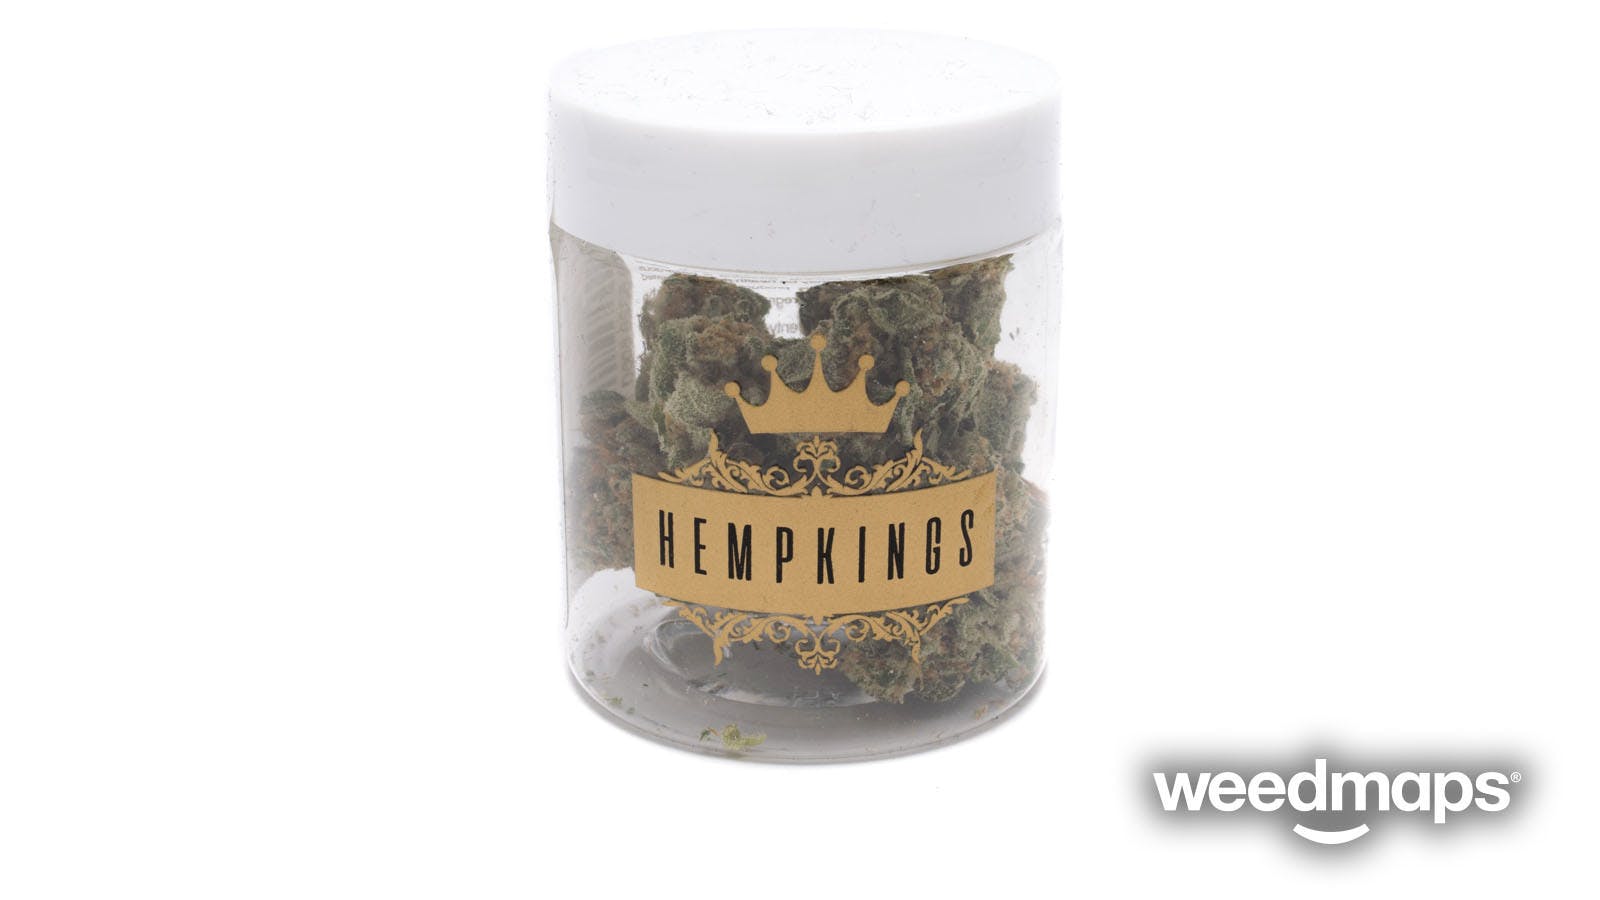 marijuana-dispensaries-kush21-vashon-in-vashon-cheese-7g-budlets-hempkings